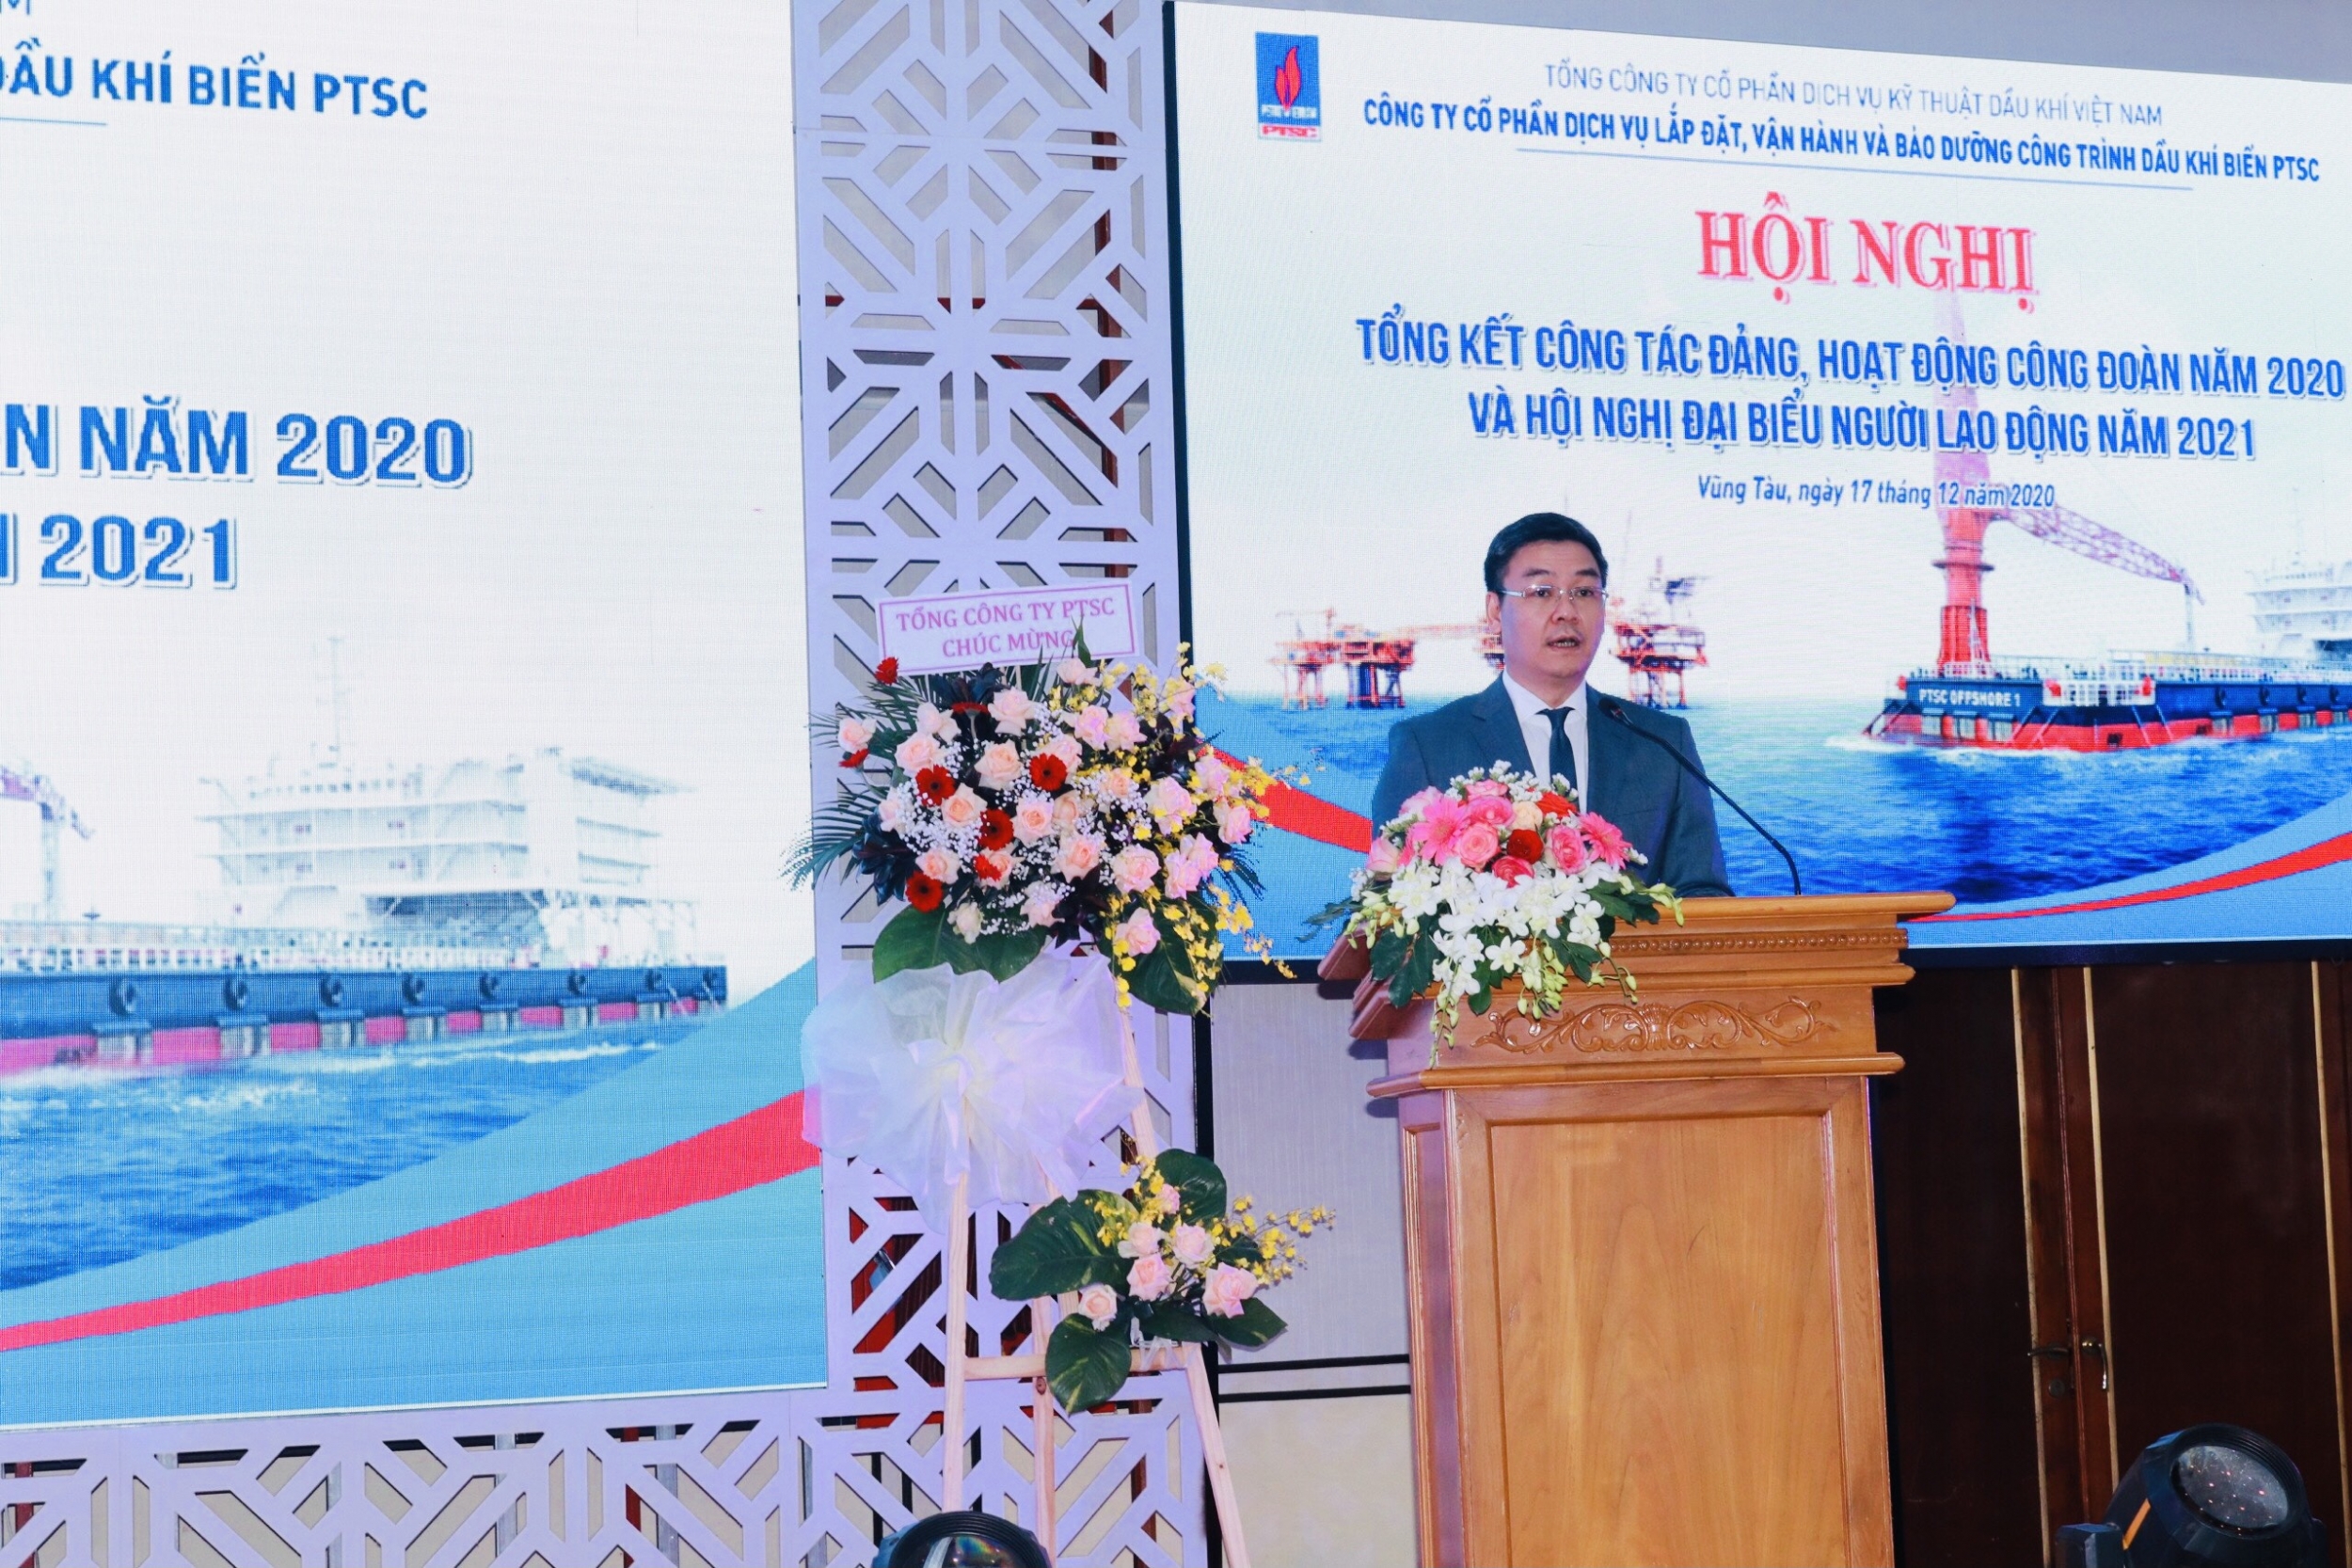 Ông Lê Mạnh Cường – Tổng Giám đốc Tổng công ty PTSC phát biểu chỉ đạo tại Hội nghị